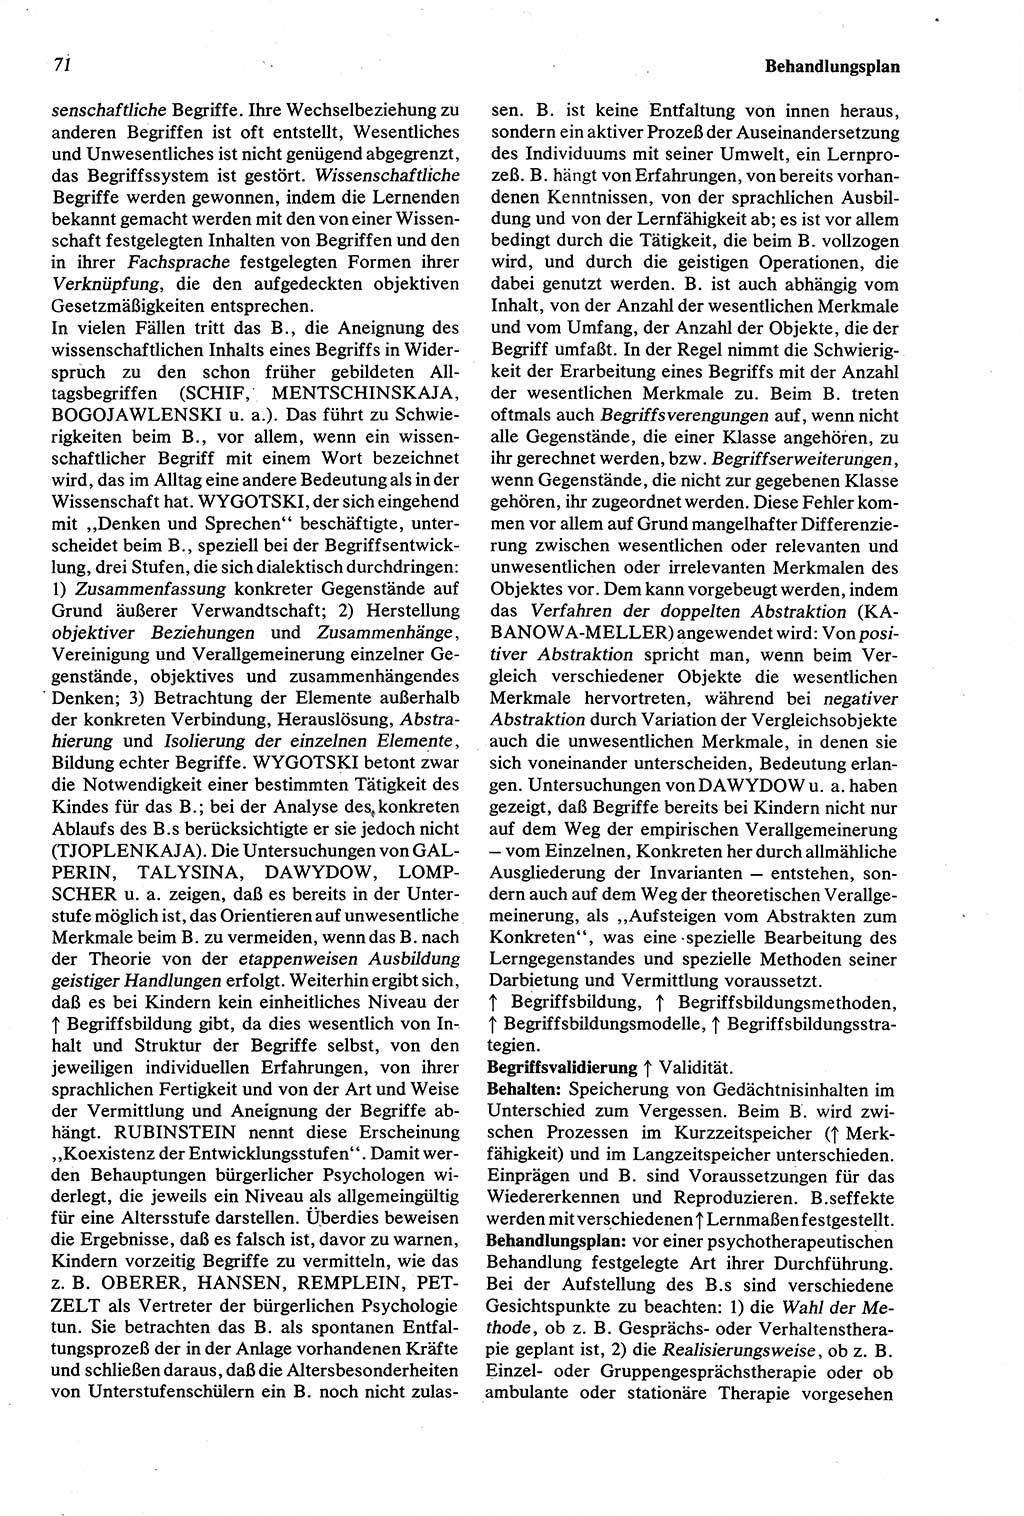 Wörterbuch der Psychologie [Deutsche Demokratische Republik (DDR)] 1976, Seite 71 (Wb. Psych. DDR 1976, S. 71)